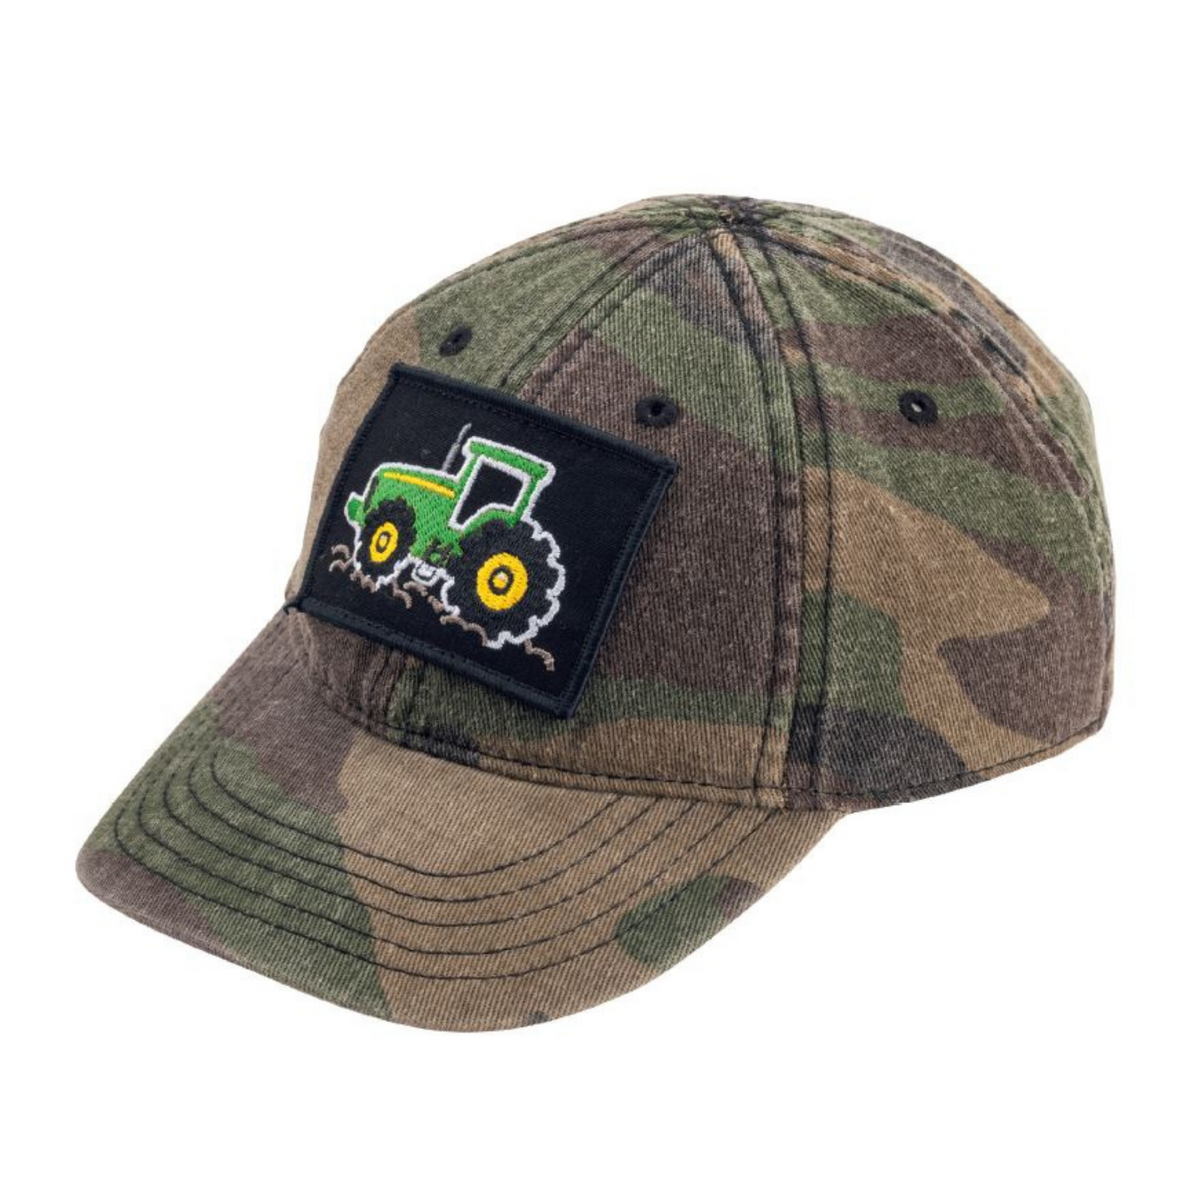 John Deere Hat Cap Black Logo Gray Hook Loop Adjustable Adult